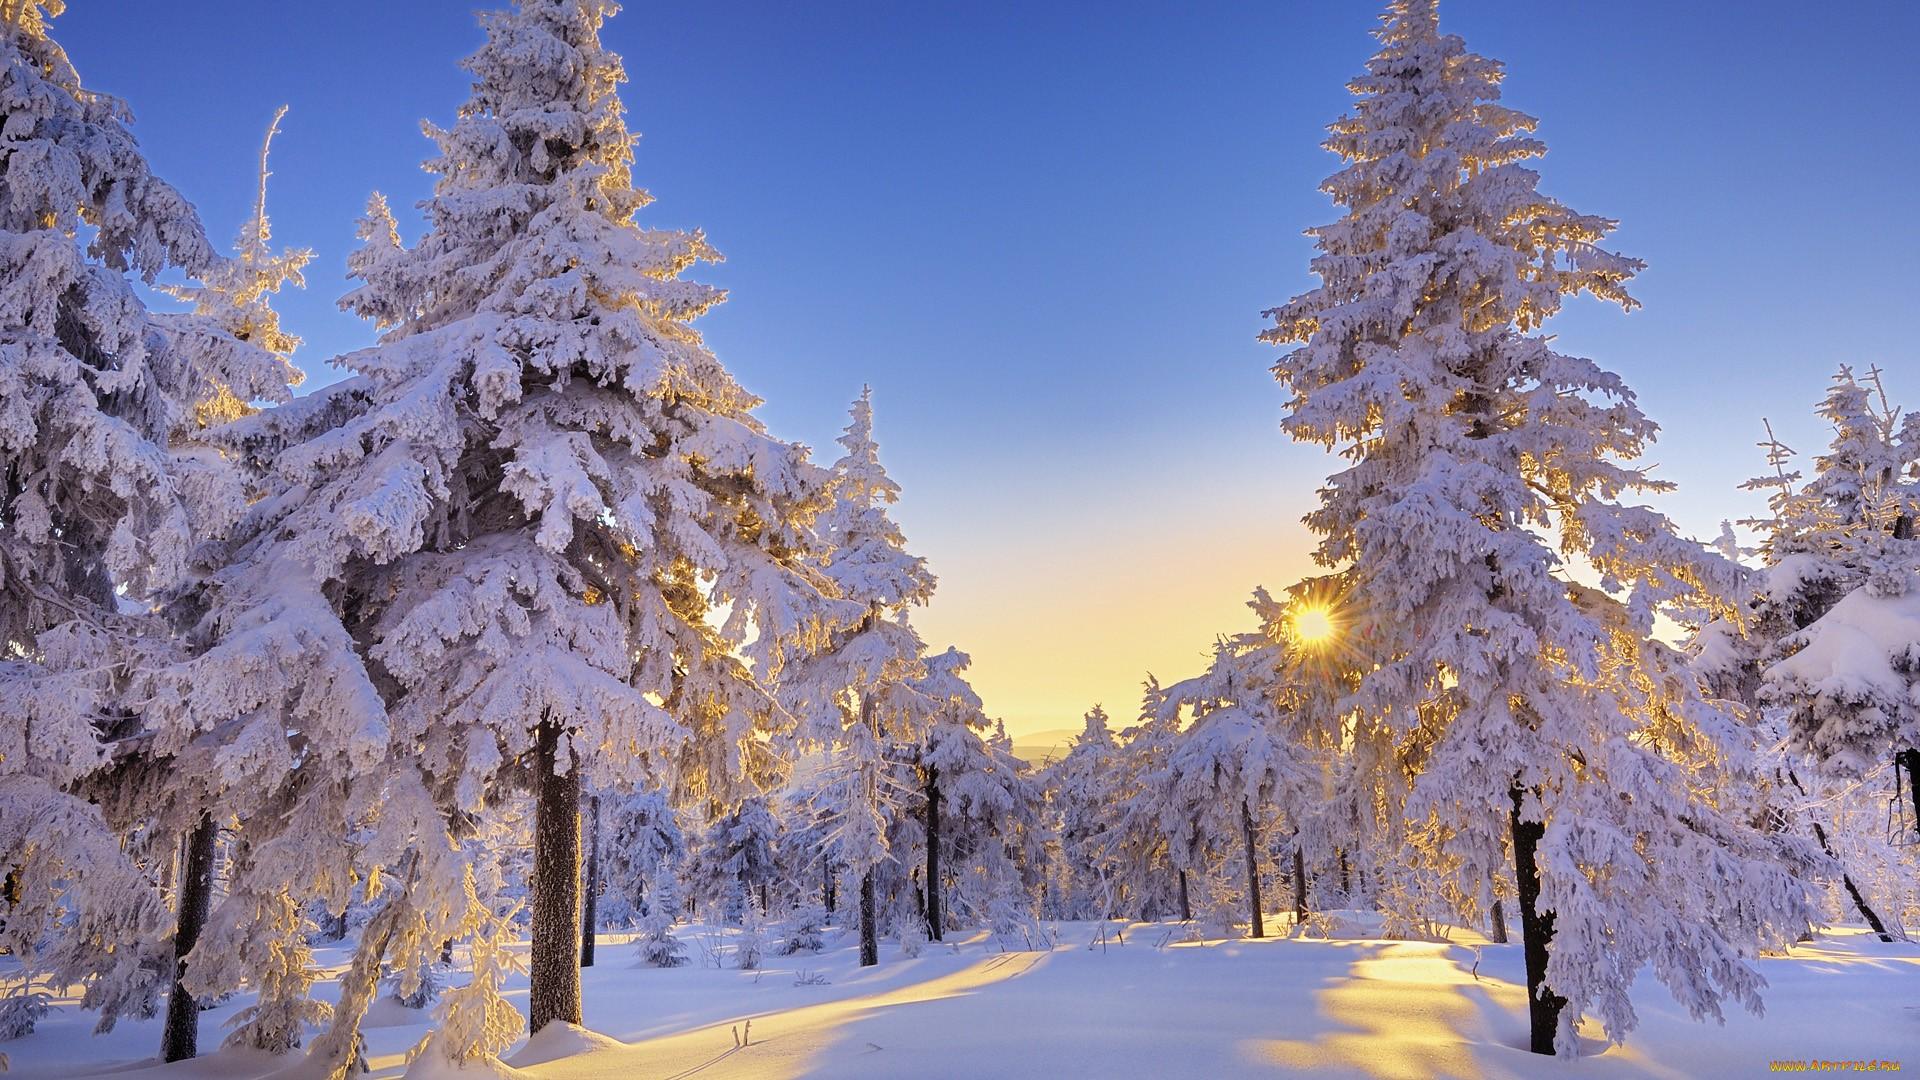 ярко светит солнце в снежном лесу -ОБОИ- на рабочий стол-Зима бесплатно